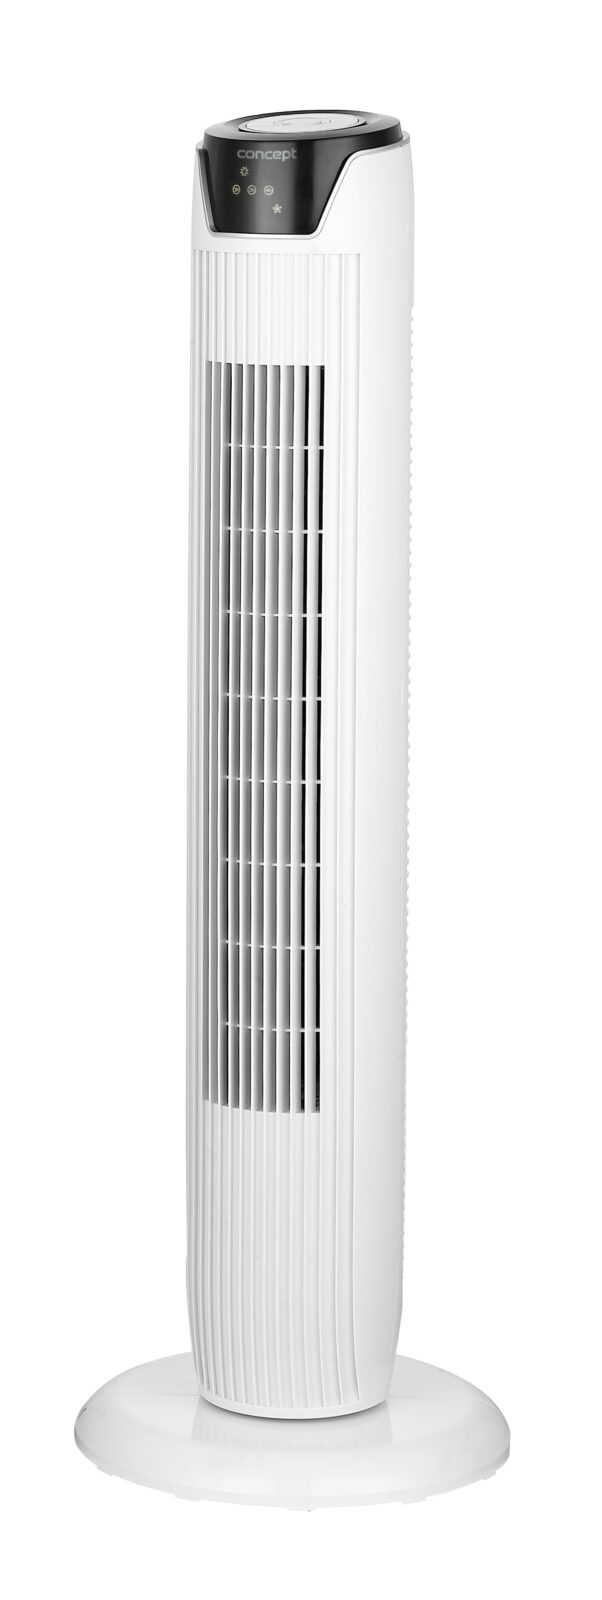 Sloupový ventilátor Concept VS5100